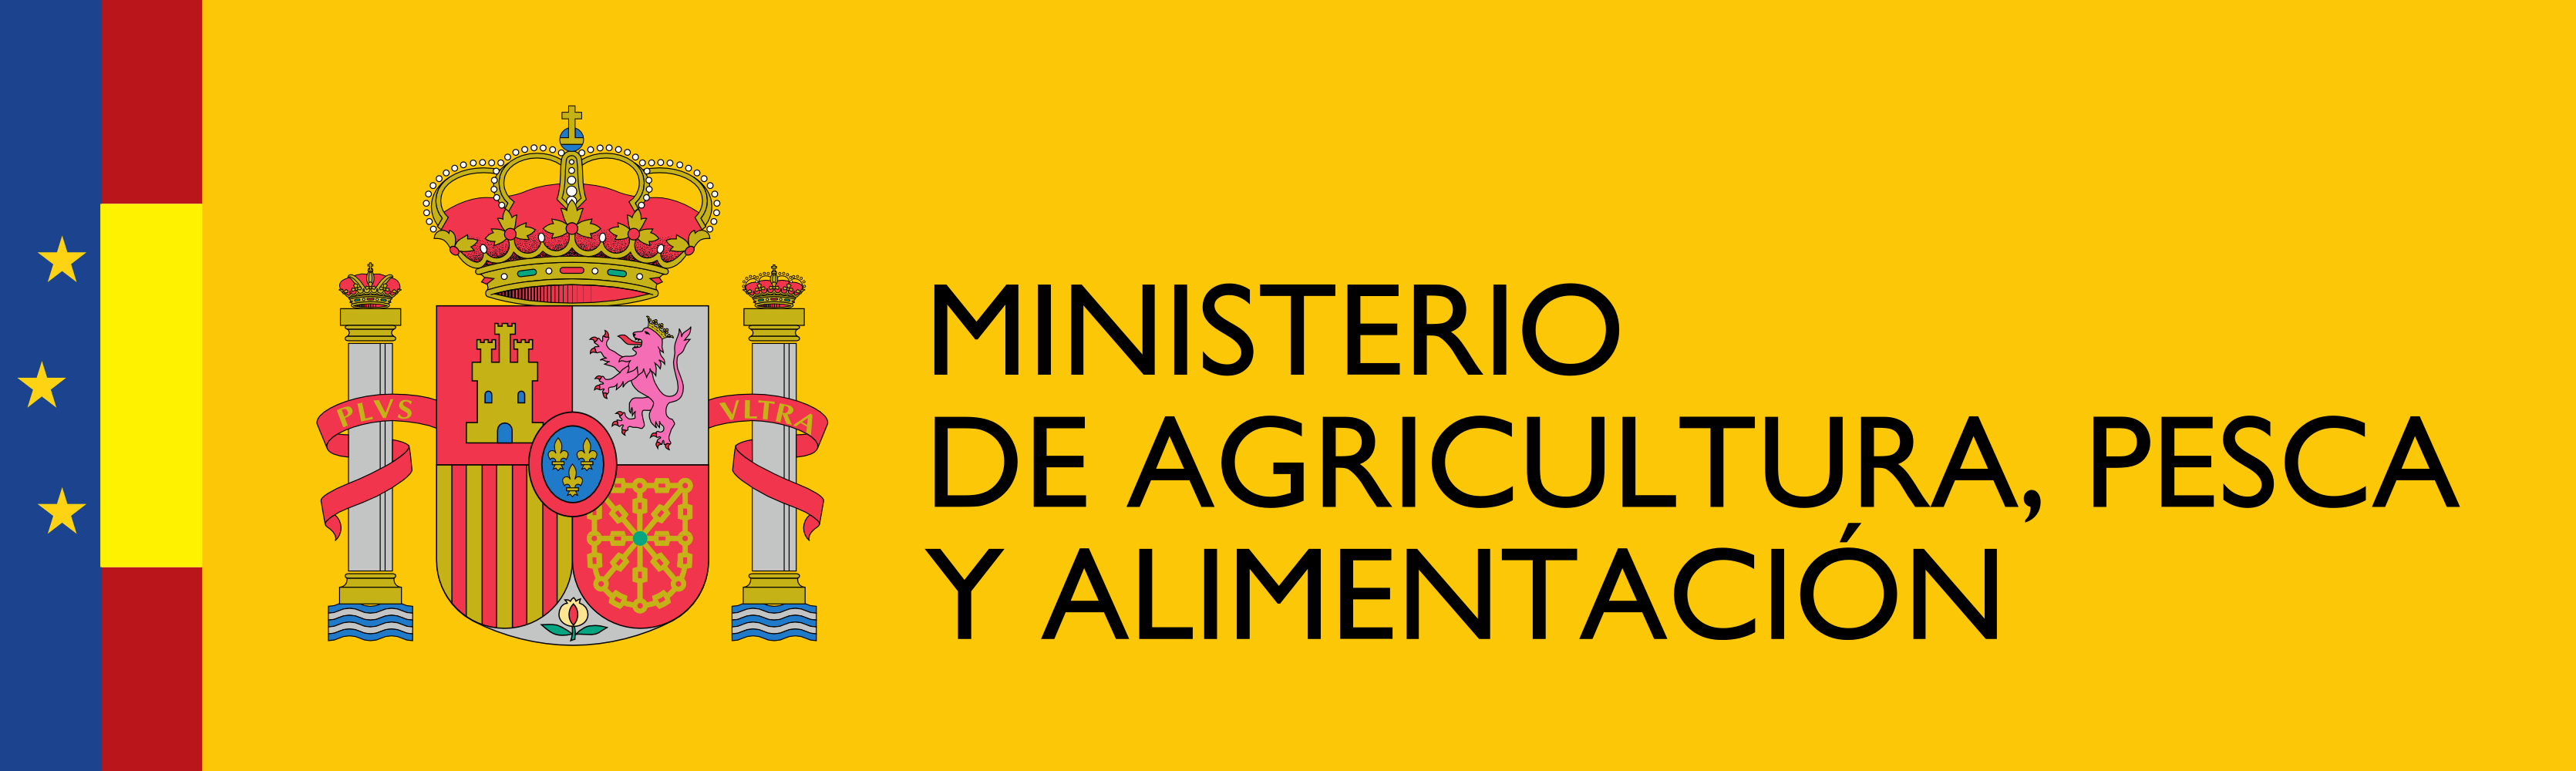 Logotipo_del_Ministerio_de_Agricultura,_Pesca_y_Alimentación